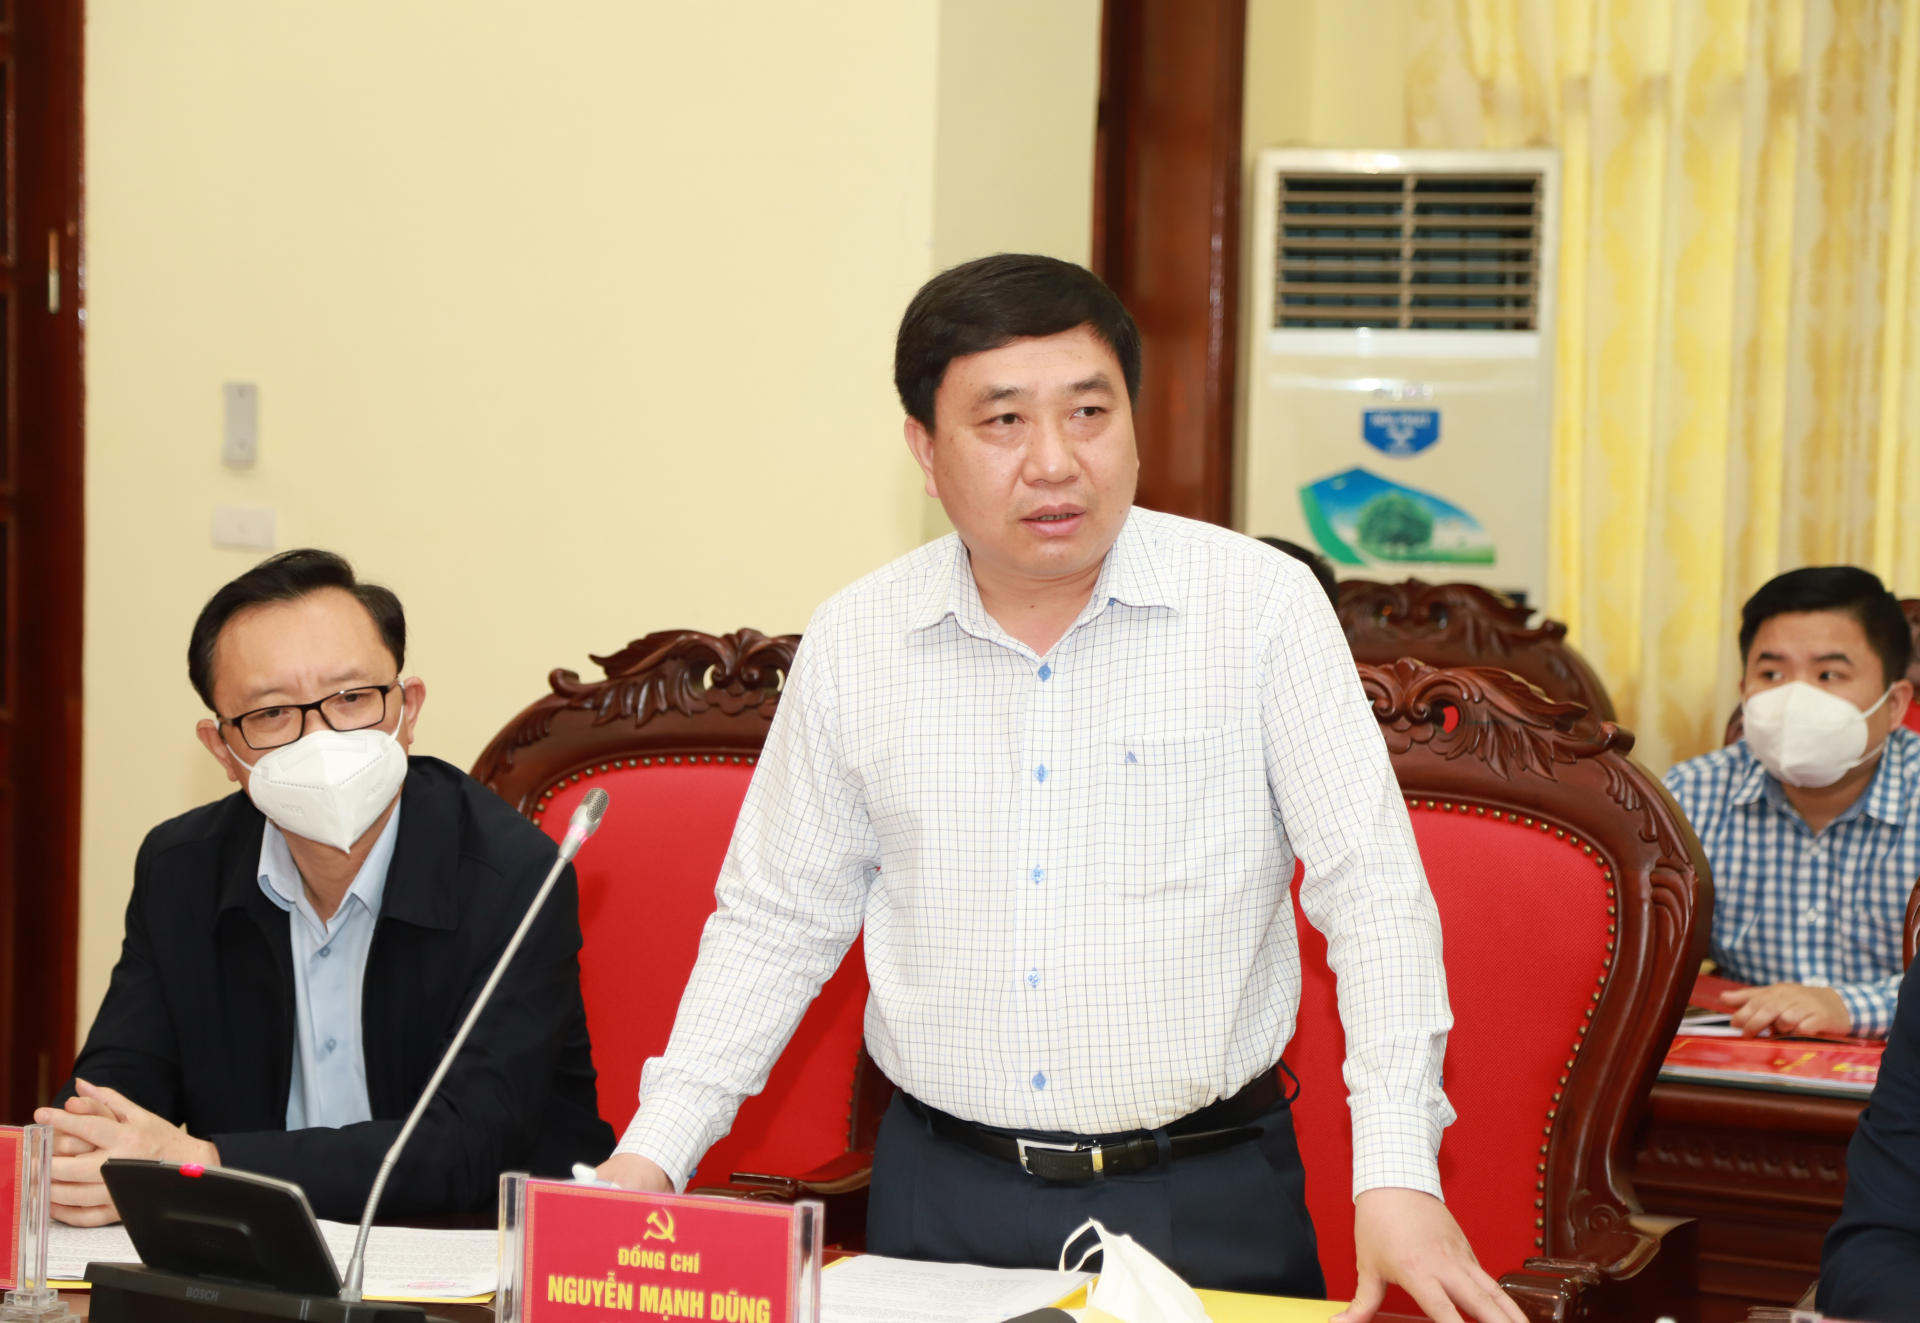 Phó Bí thư Tỉnh ủy Nguyễn Mạnh Dũng tham gia thảo luận